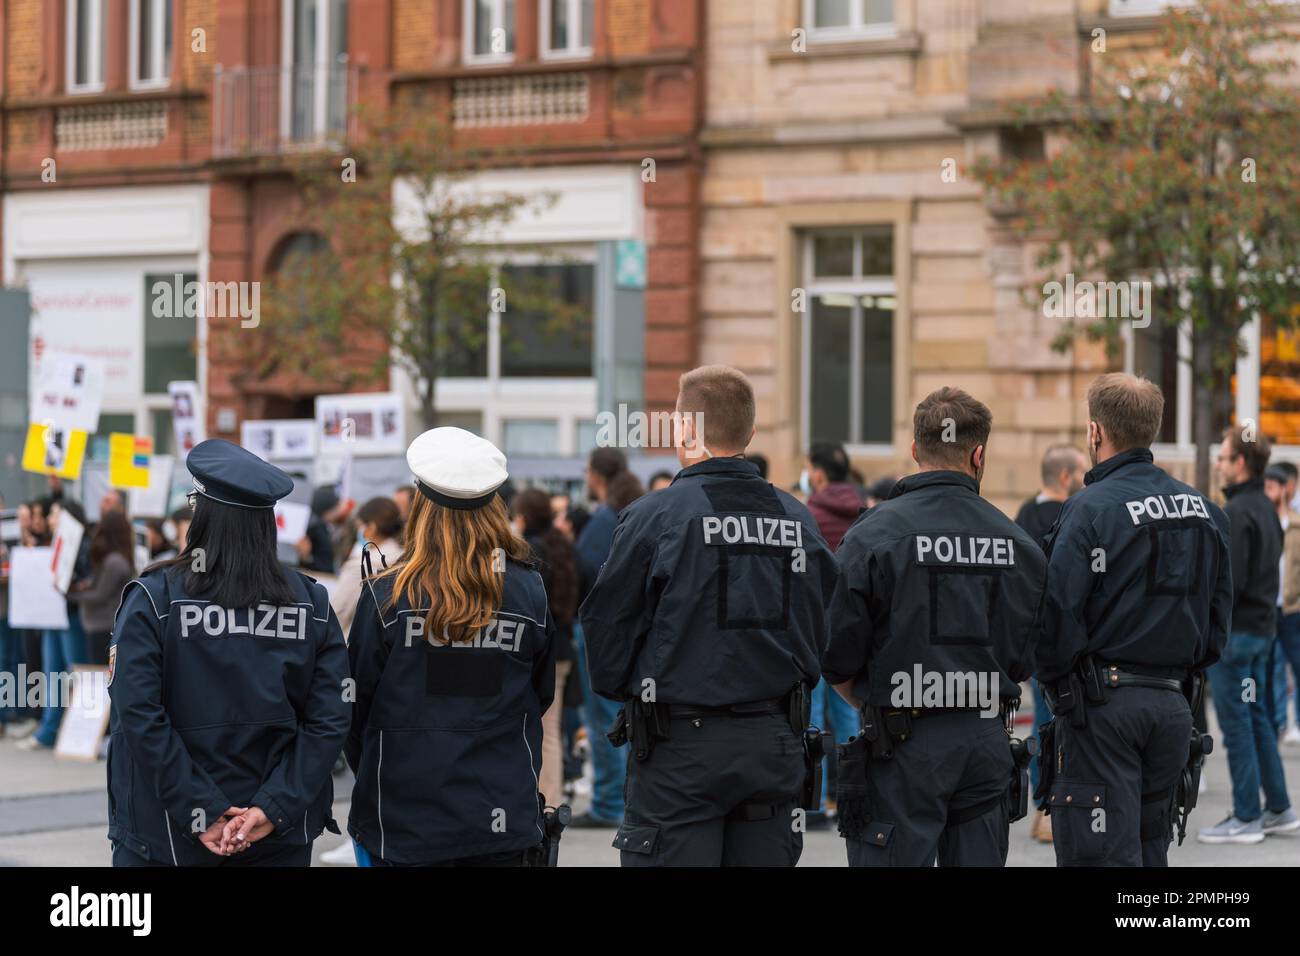 Poliziotti e donne tedeschi in fila, garantendo la sicurezza durante una protesta contro l'oppressione delle donne in Iran, Kaiserslautern, Germania Foto Stock